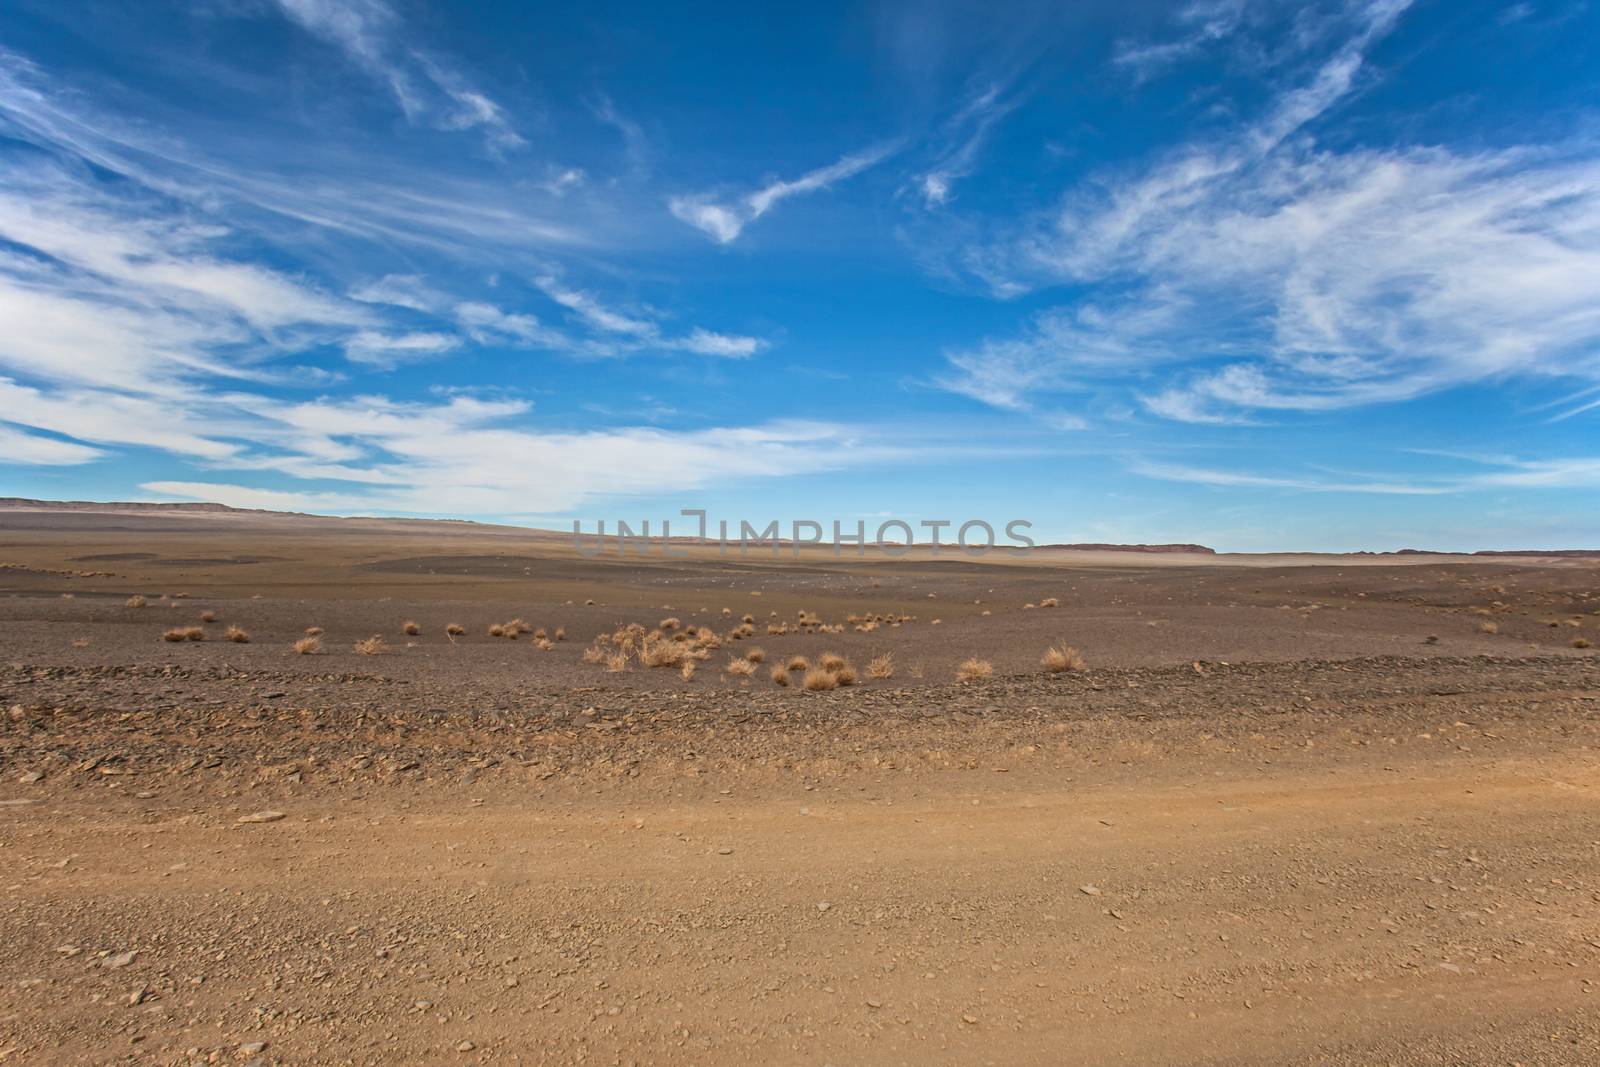 Namibian desert landscape 1 by kobus_peche